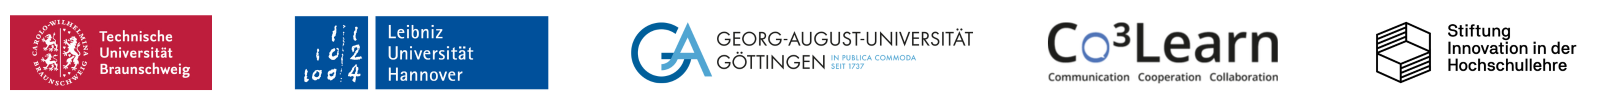 Logos der Universitäten Braunschweig, Hannover und Göttingen sowie des Verbundprojekts CO3Learn und der Stiftung Innovation in der Hochschullehre.